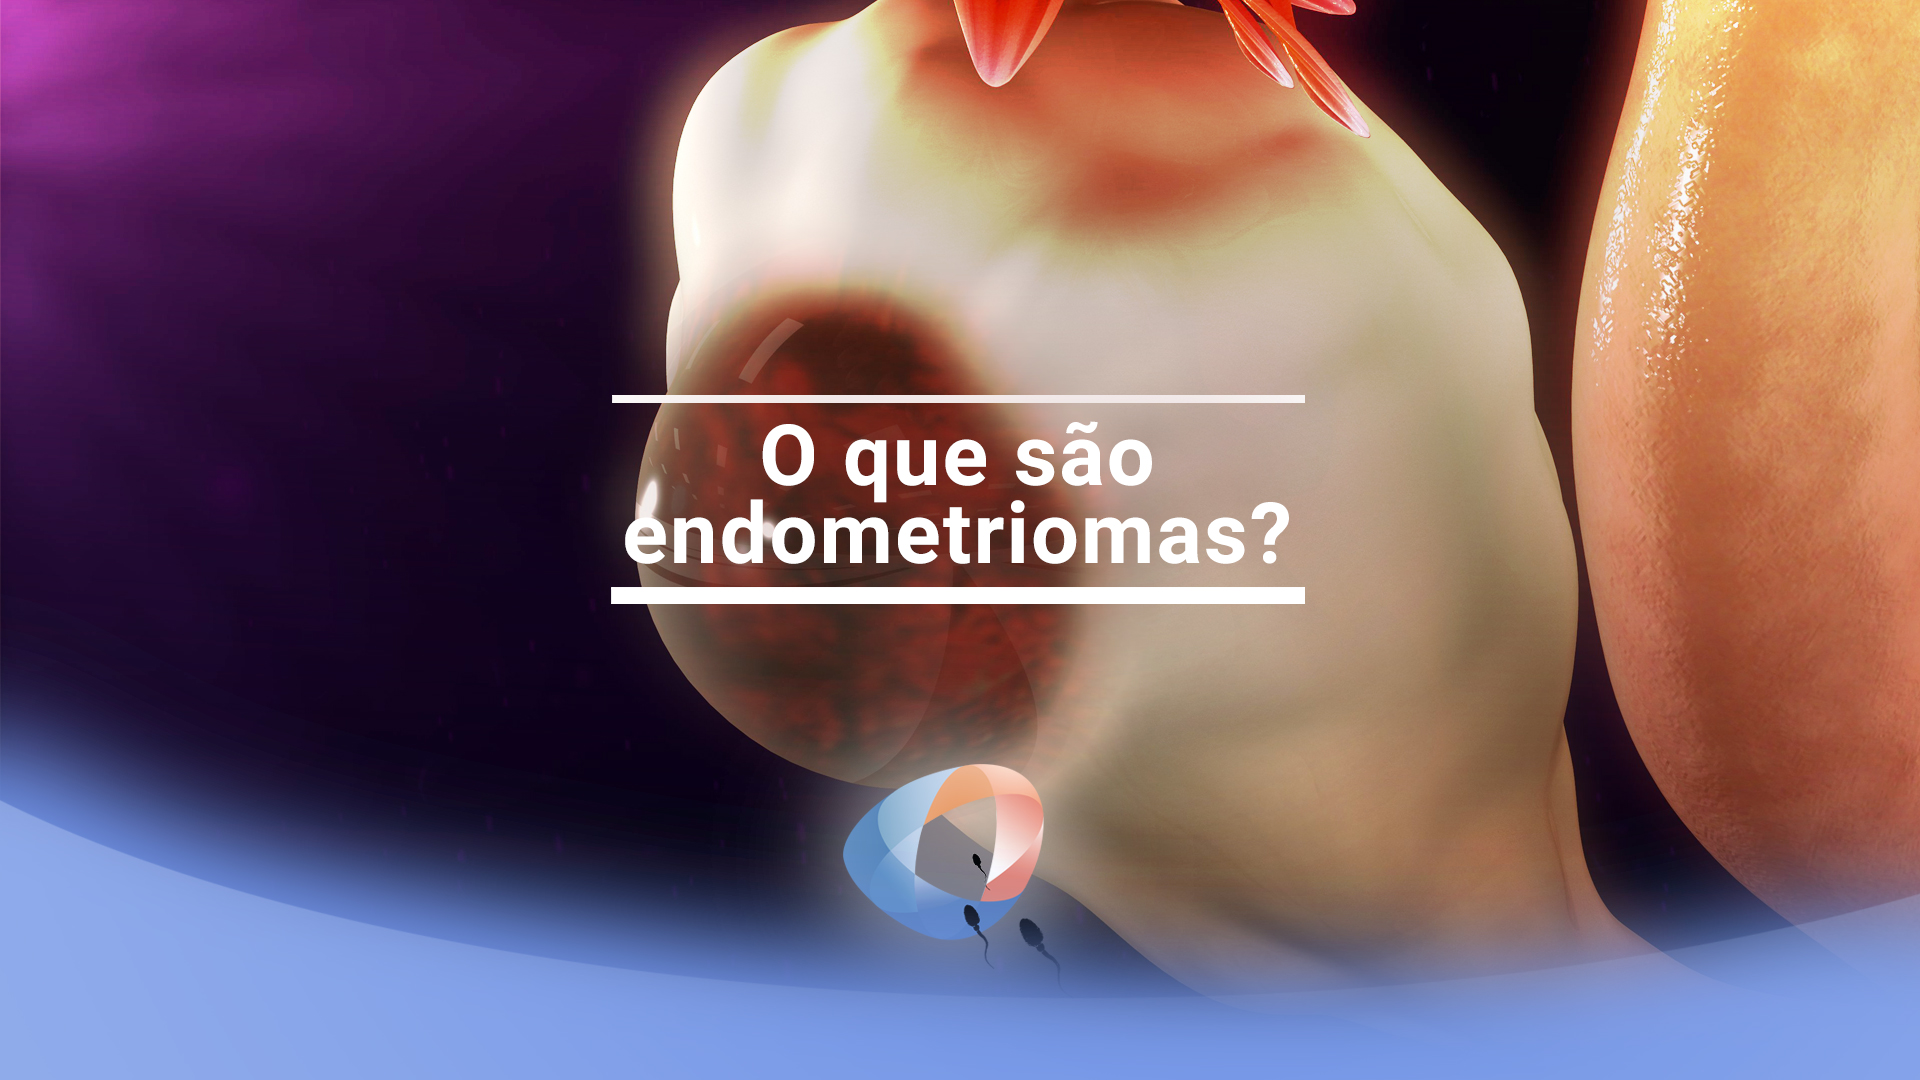 O que são endometriomas?